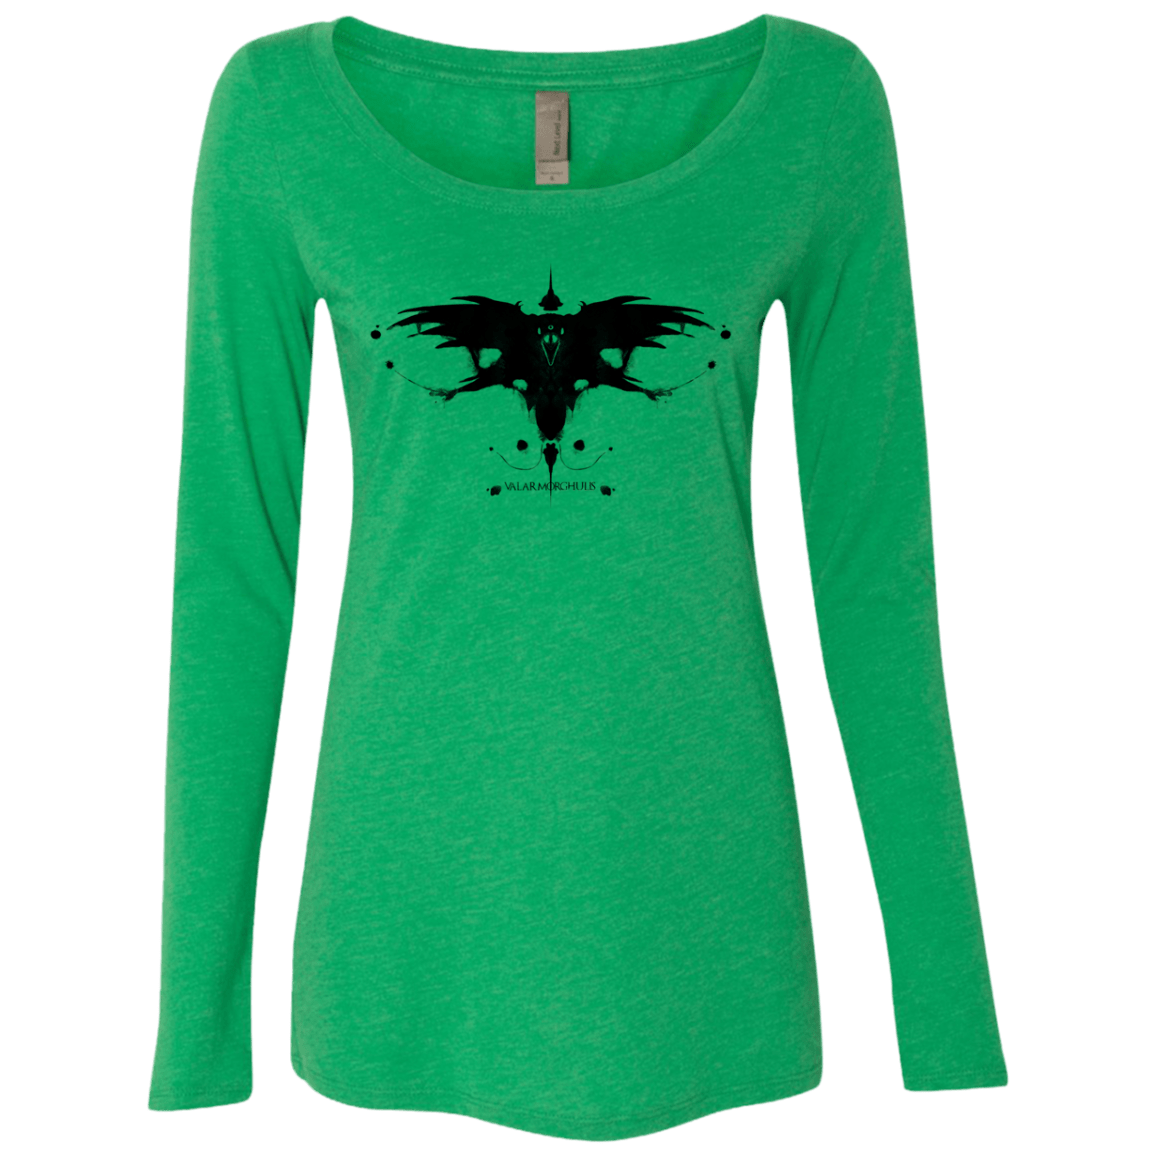 T-Shirts Envy / S Valar Morghulis Women's Triblend Long Sleeve Shirt